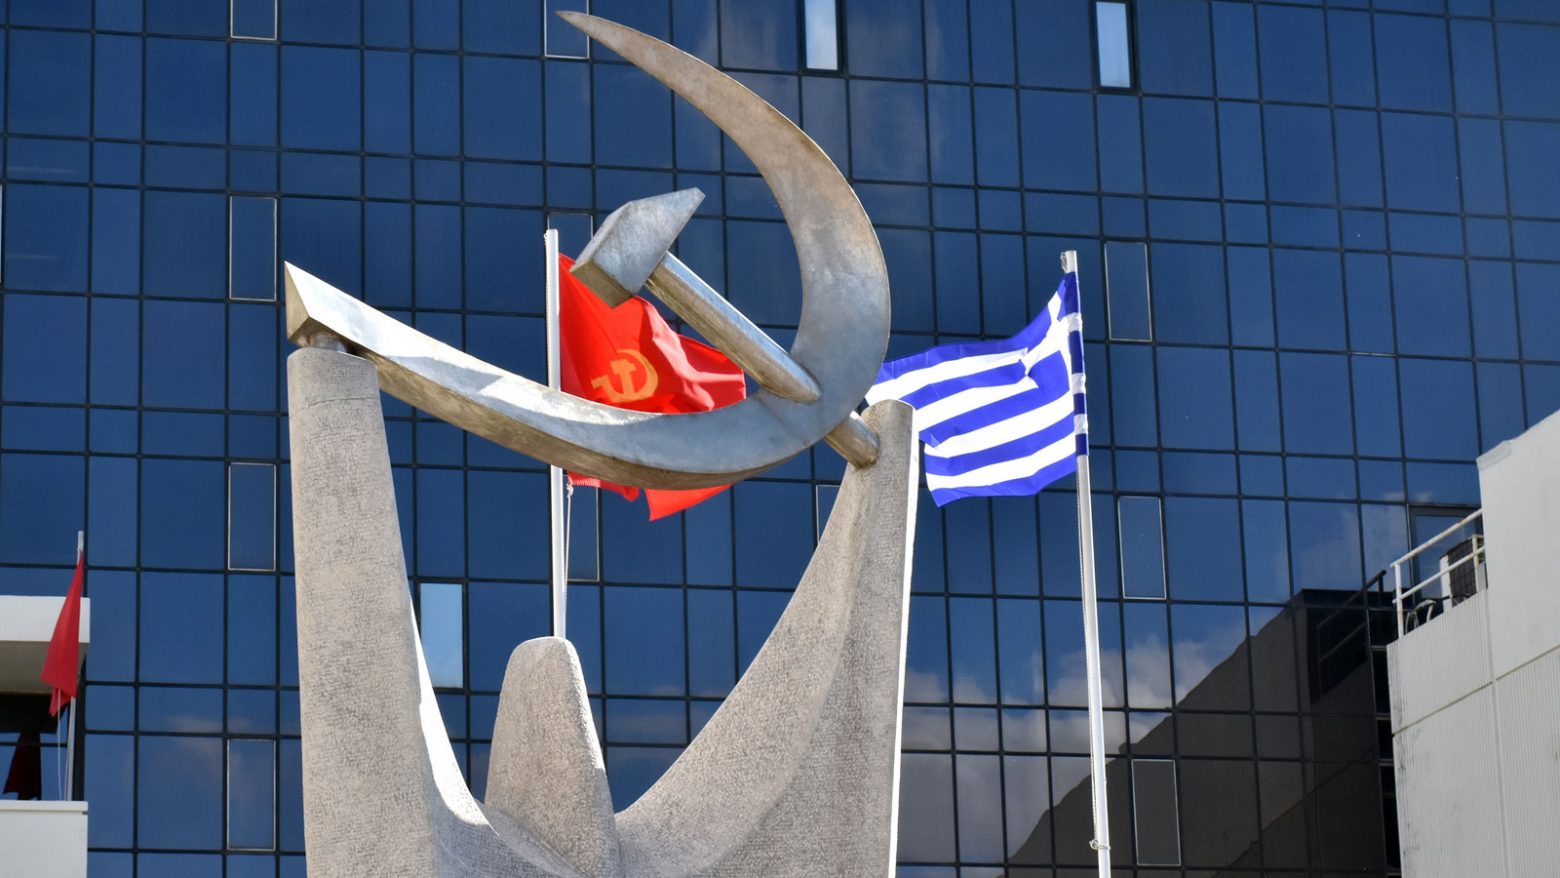 ΚΚΕ: Εκτός πραγματικότητας ο ισχυρισμός ότι η ενίσχυση της συνοχής του ΝΑΤΟ ωφελεί τις ελληνουρκικές σχέσεις